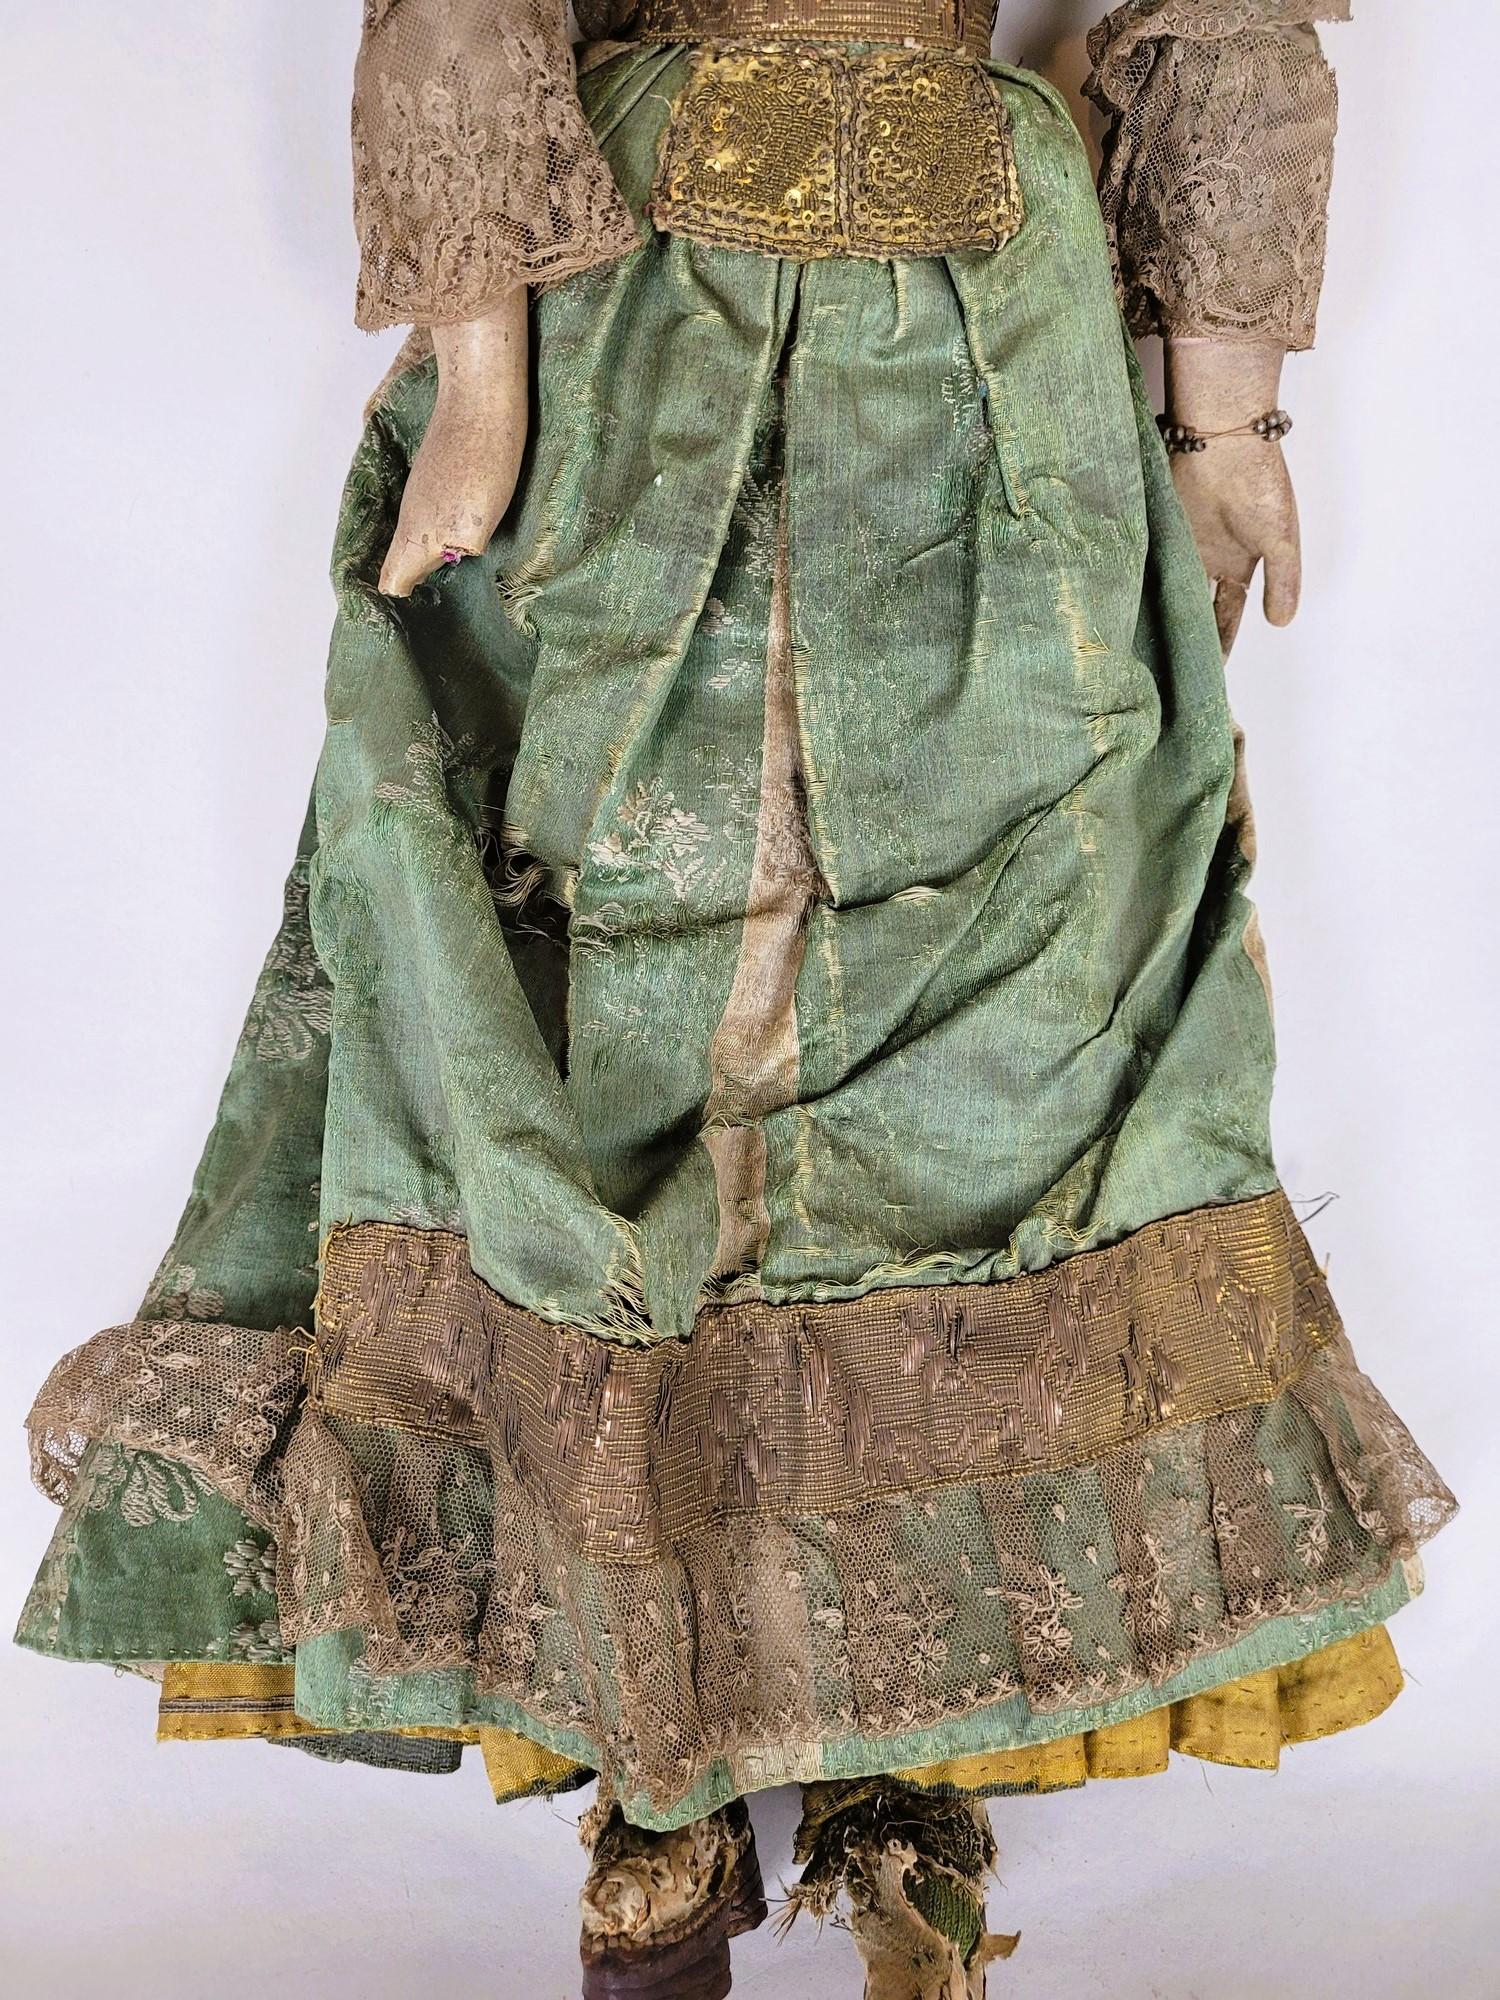 Gegliederte Puppe, 18. Jahrhundert (Stoff)